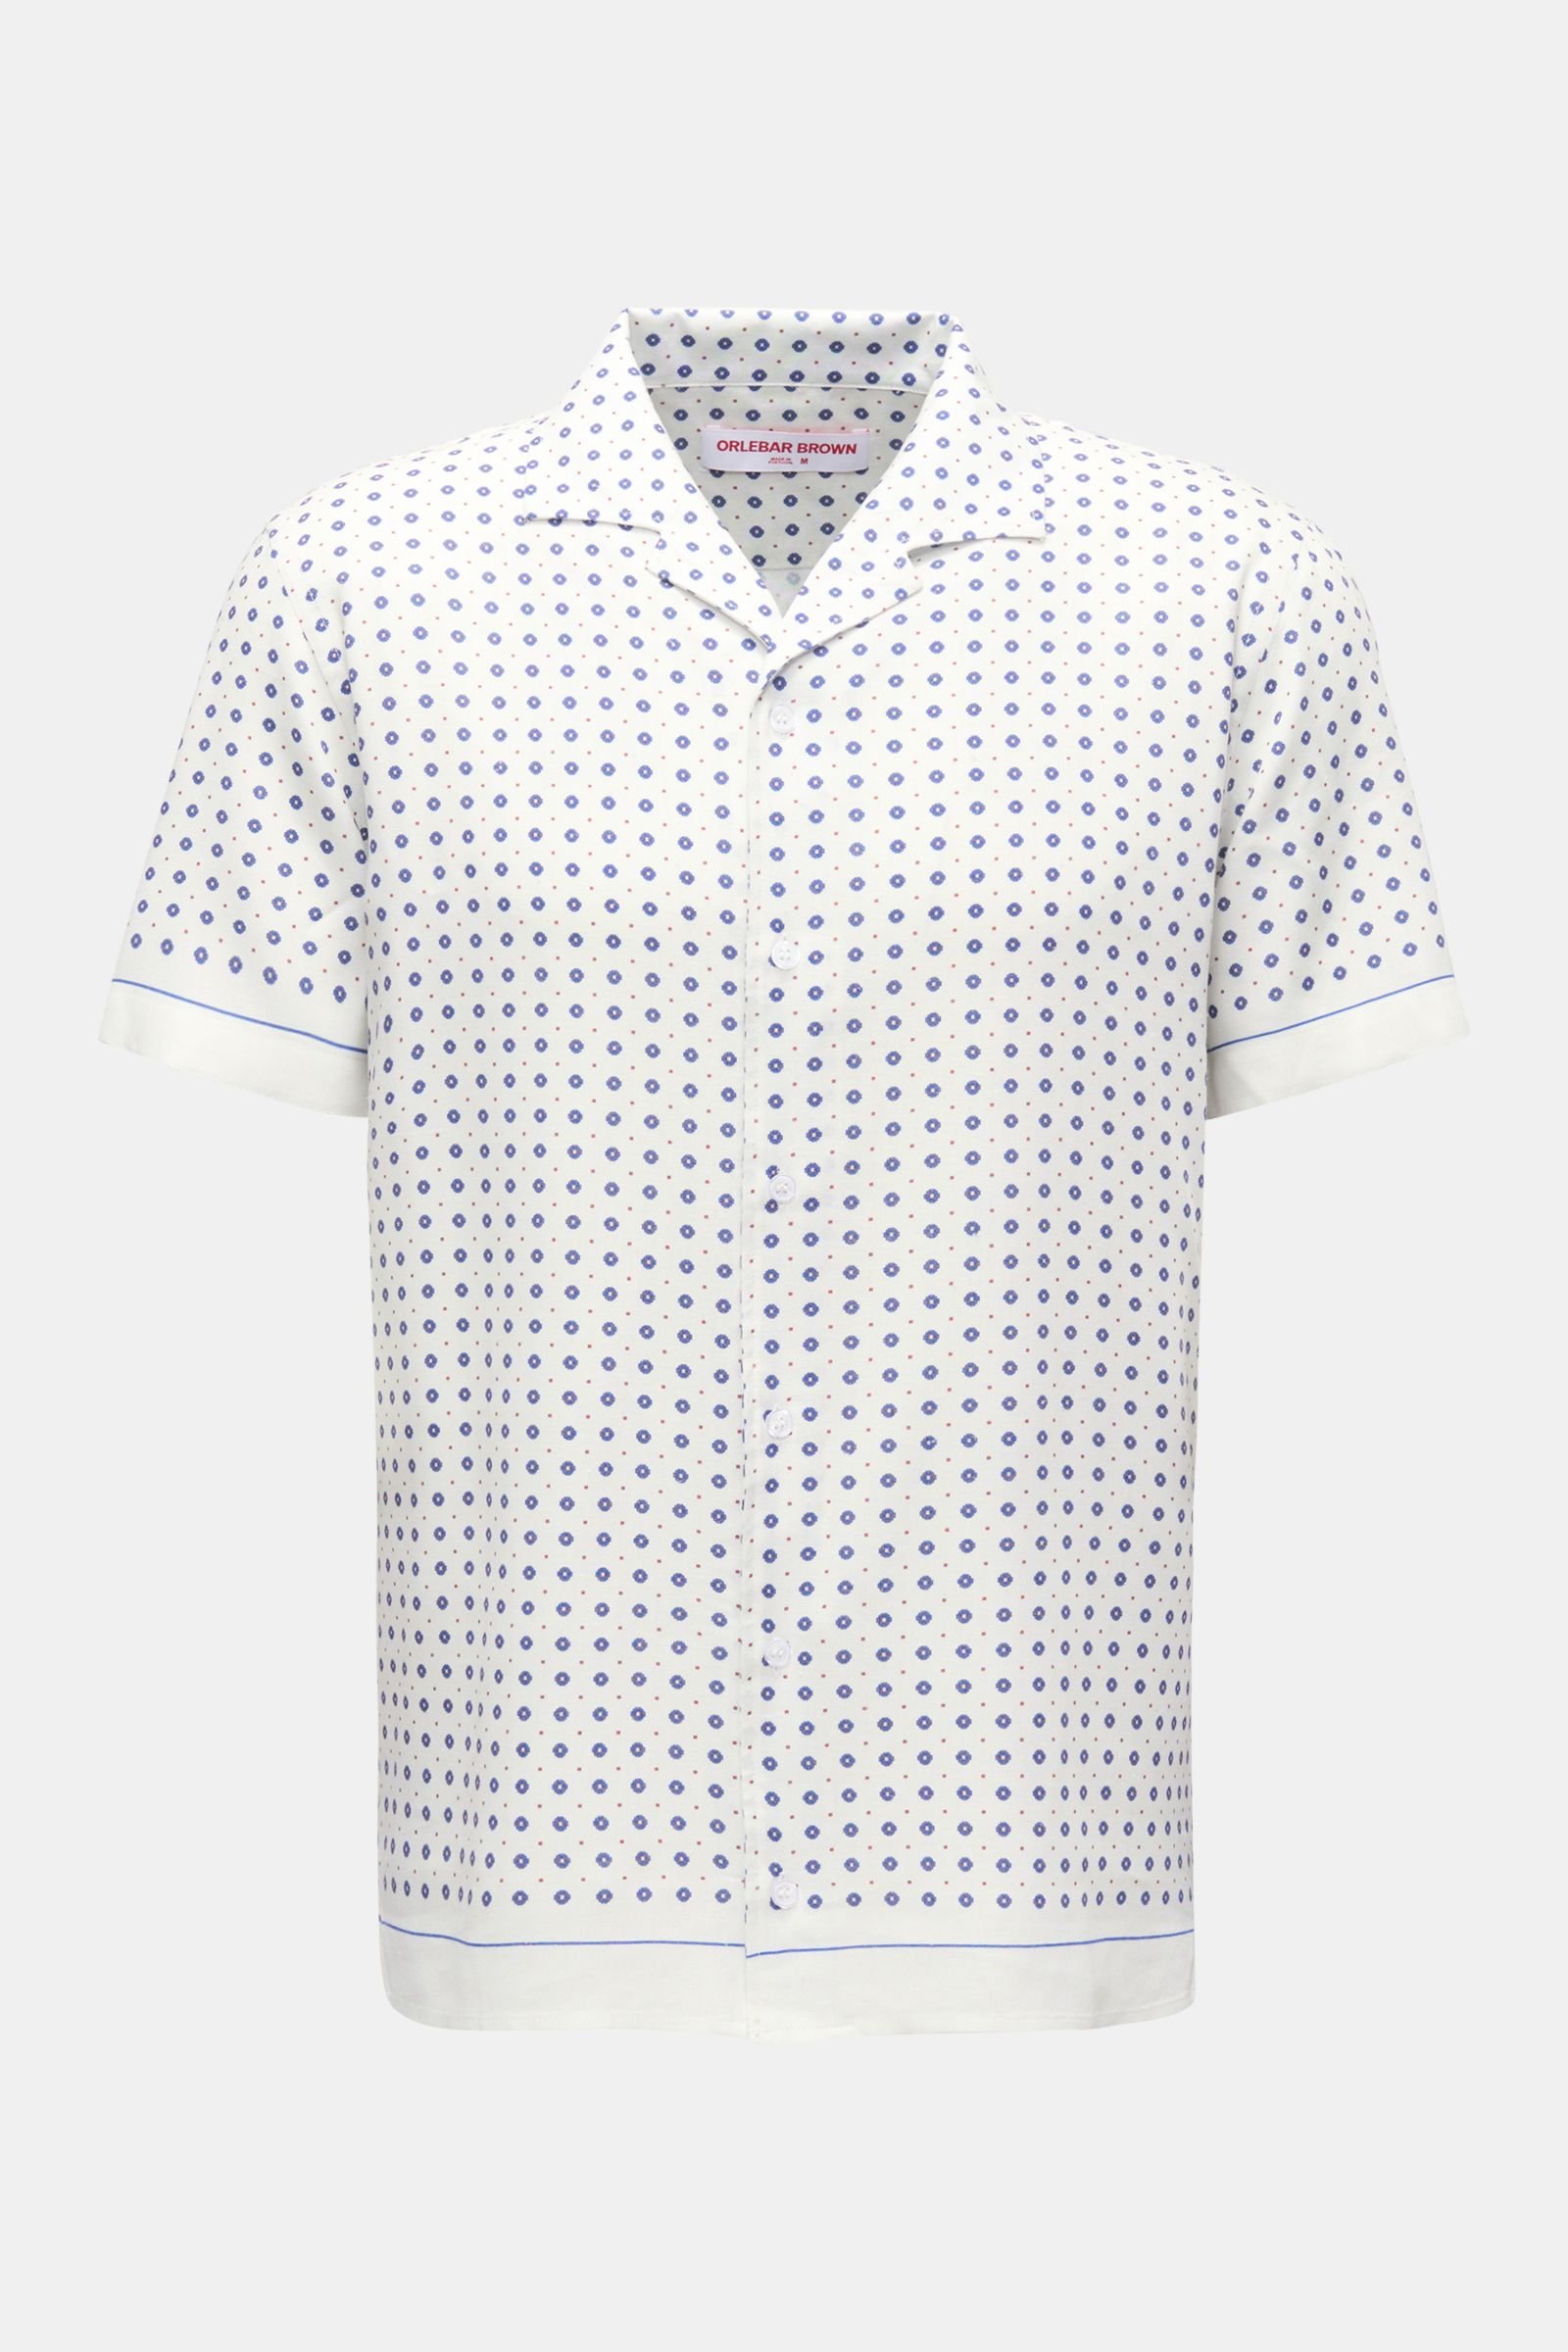 Short-sleeved shirt 'Hibbert Cravat' Cuban collar off-white/navy patterned